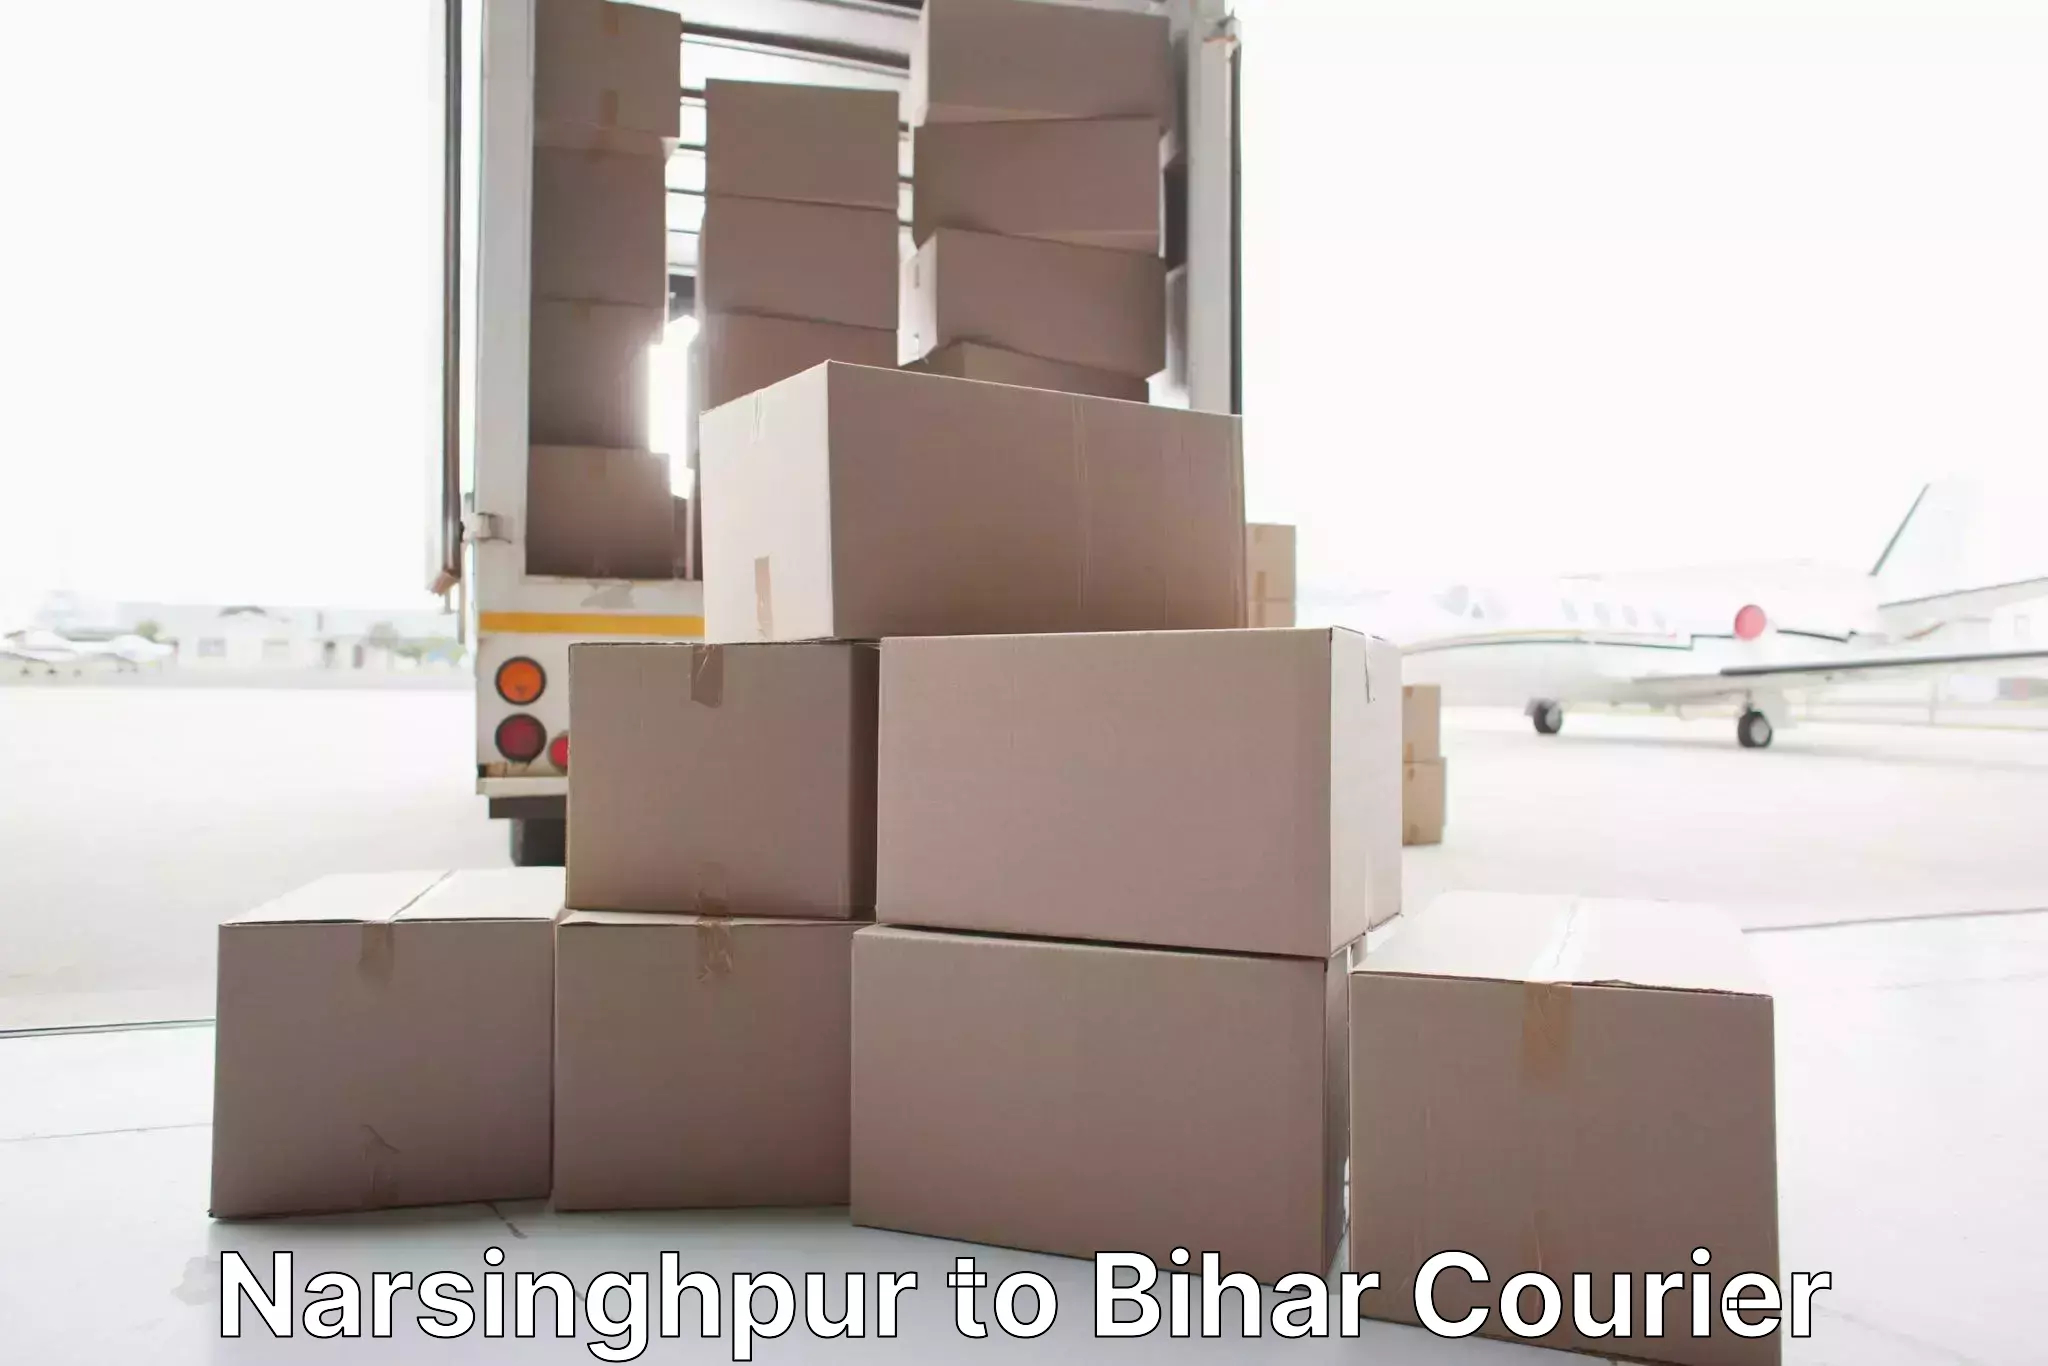 Furniture delivery service Narsinghpur to Dalsinghsarai